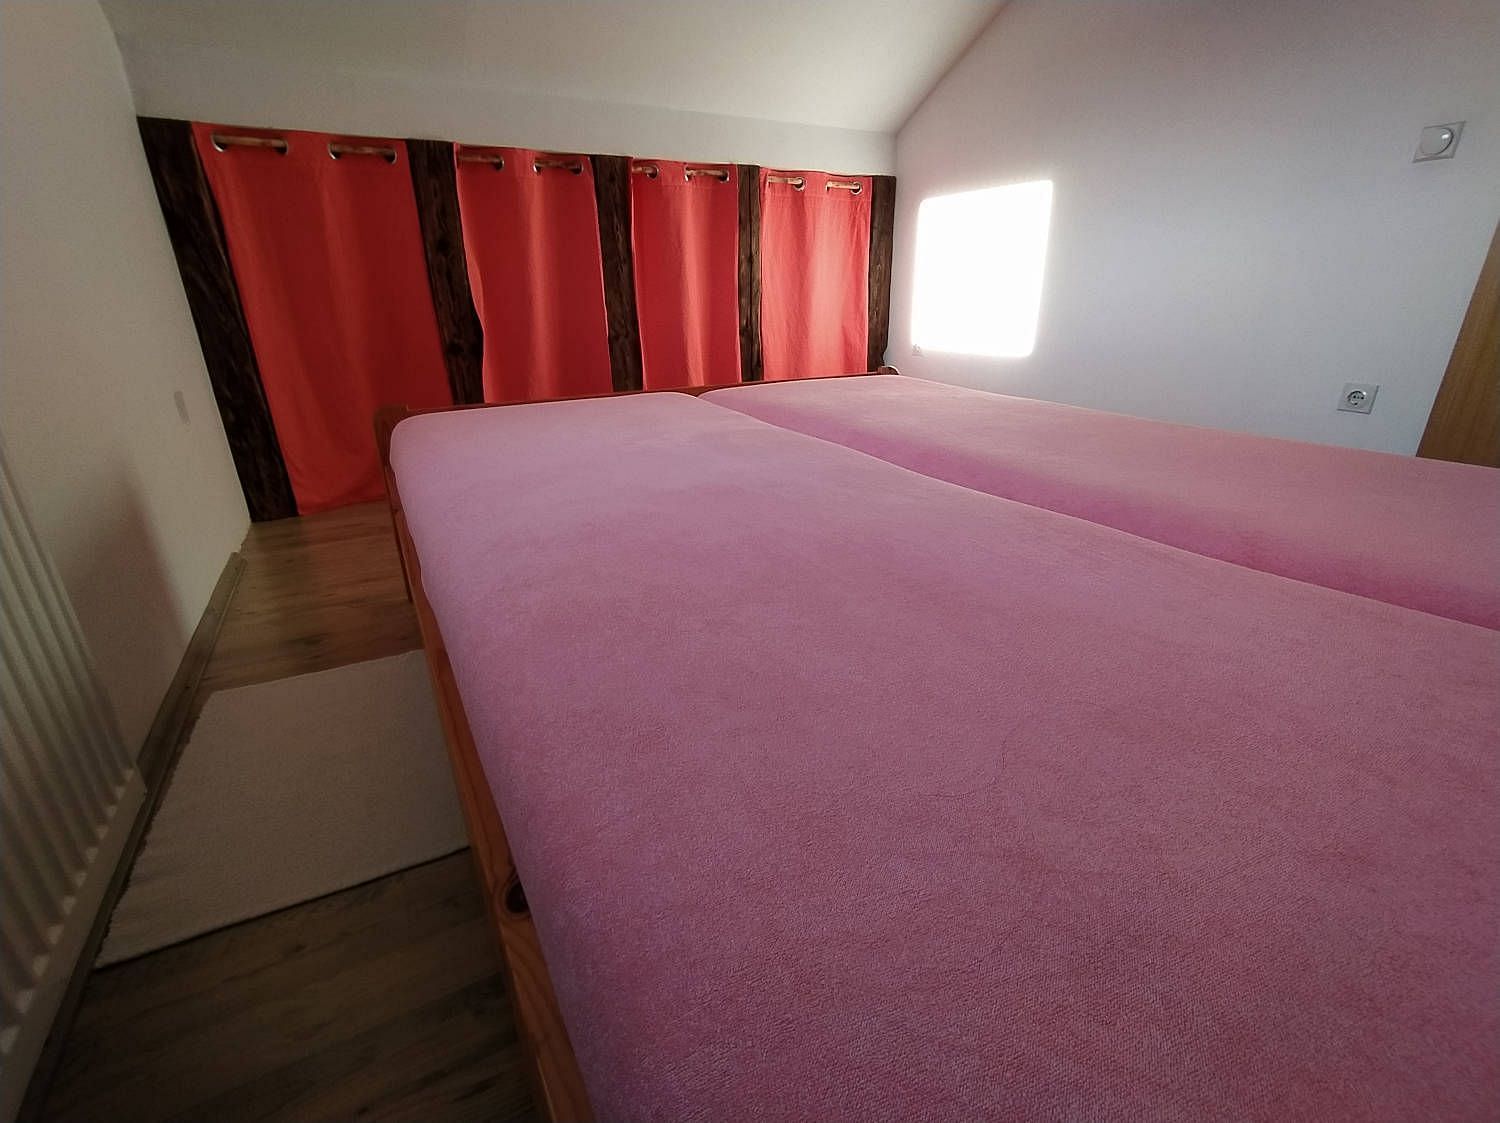 JWguest Apartment at Banja Luka, Republika Srpska | Cozy and spacious apartment | Jwbnb no brobnb 22